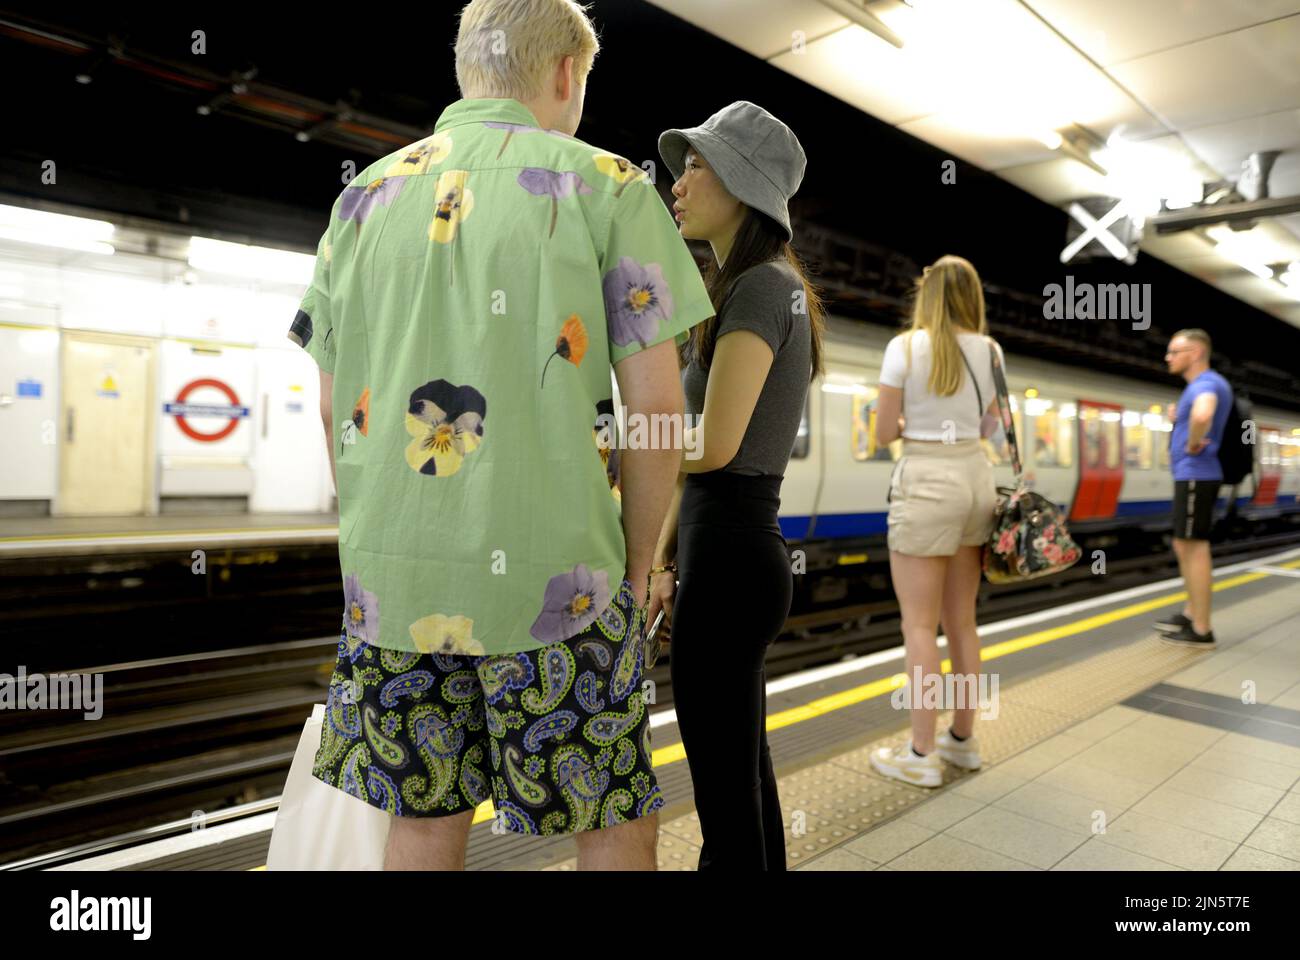 London, England, UK. People waiting on the platform of an underground station Stock Photo